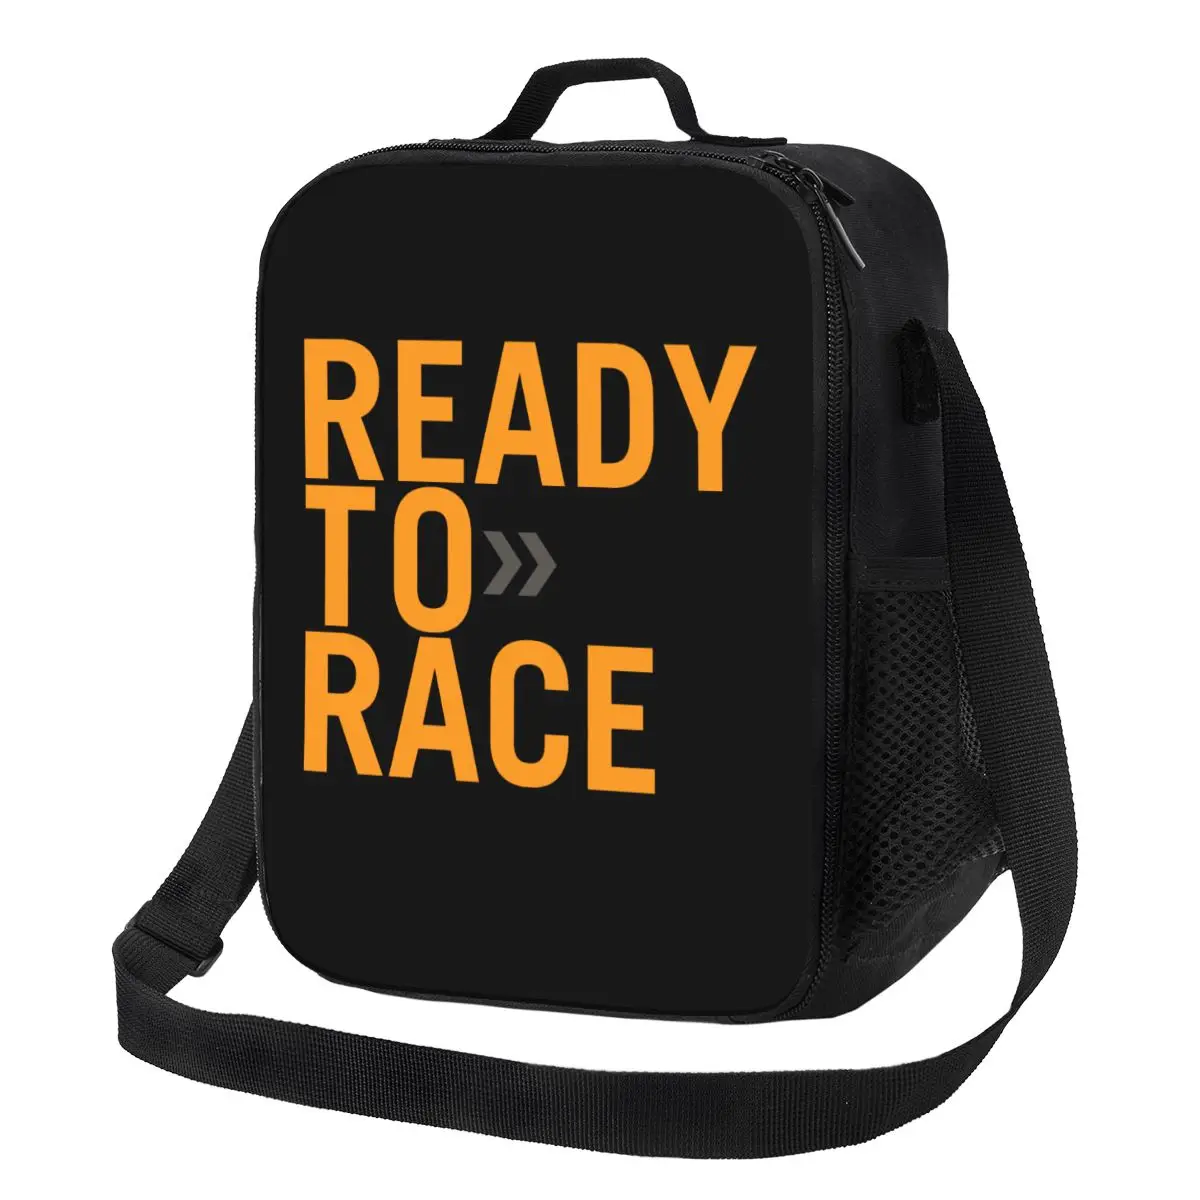 Готовая к гонке Изолированная сумка для ланча для школы, офиса, мотогонщика, гоночного спорта, Герметичный термоохладитель, коробка для Бенто для женщин и детей